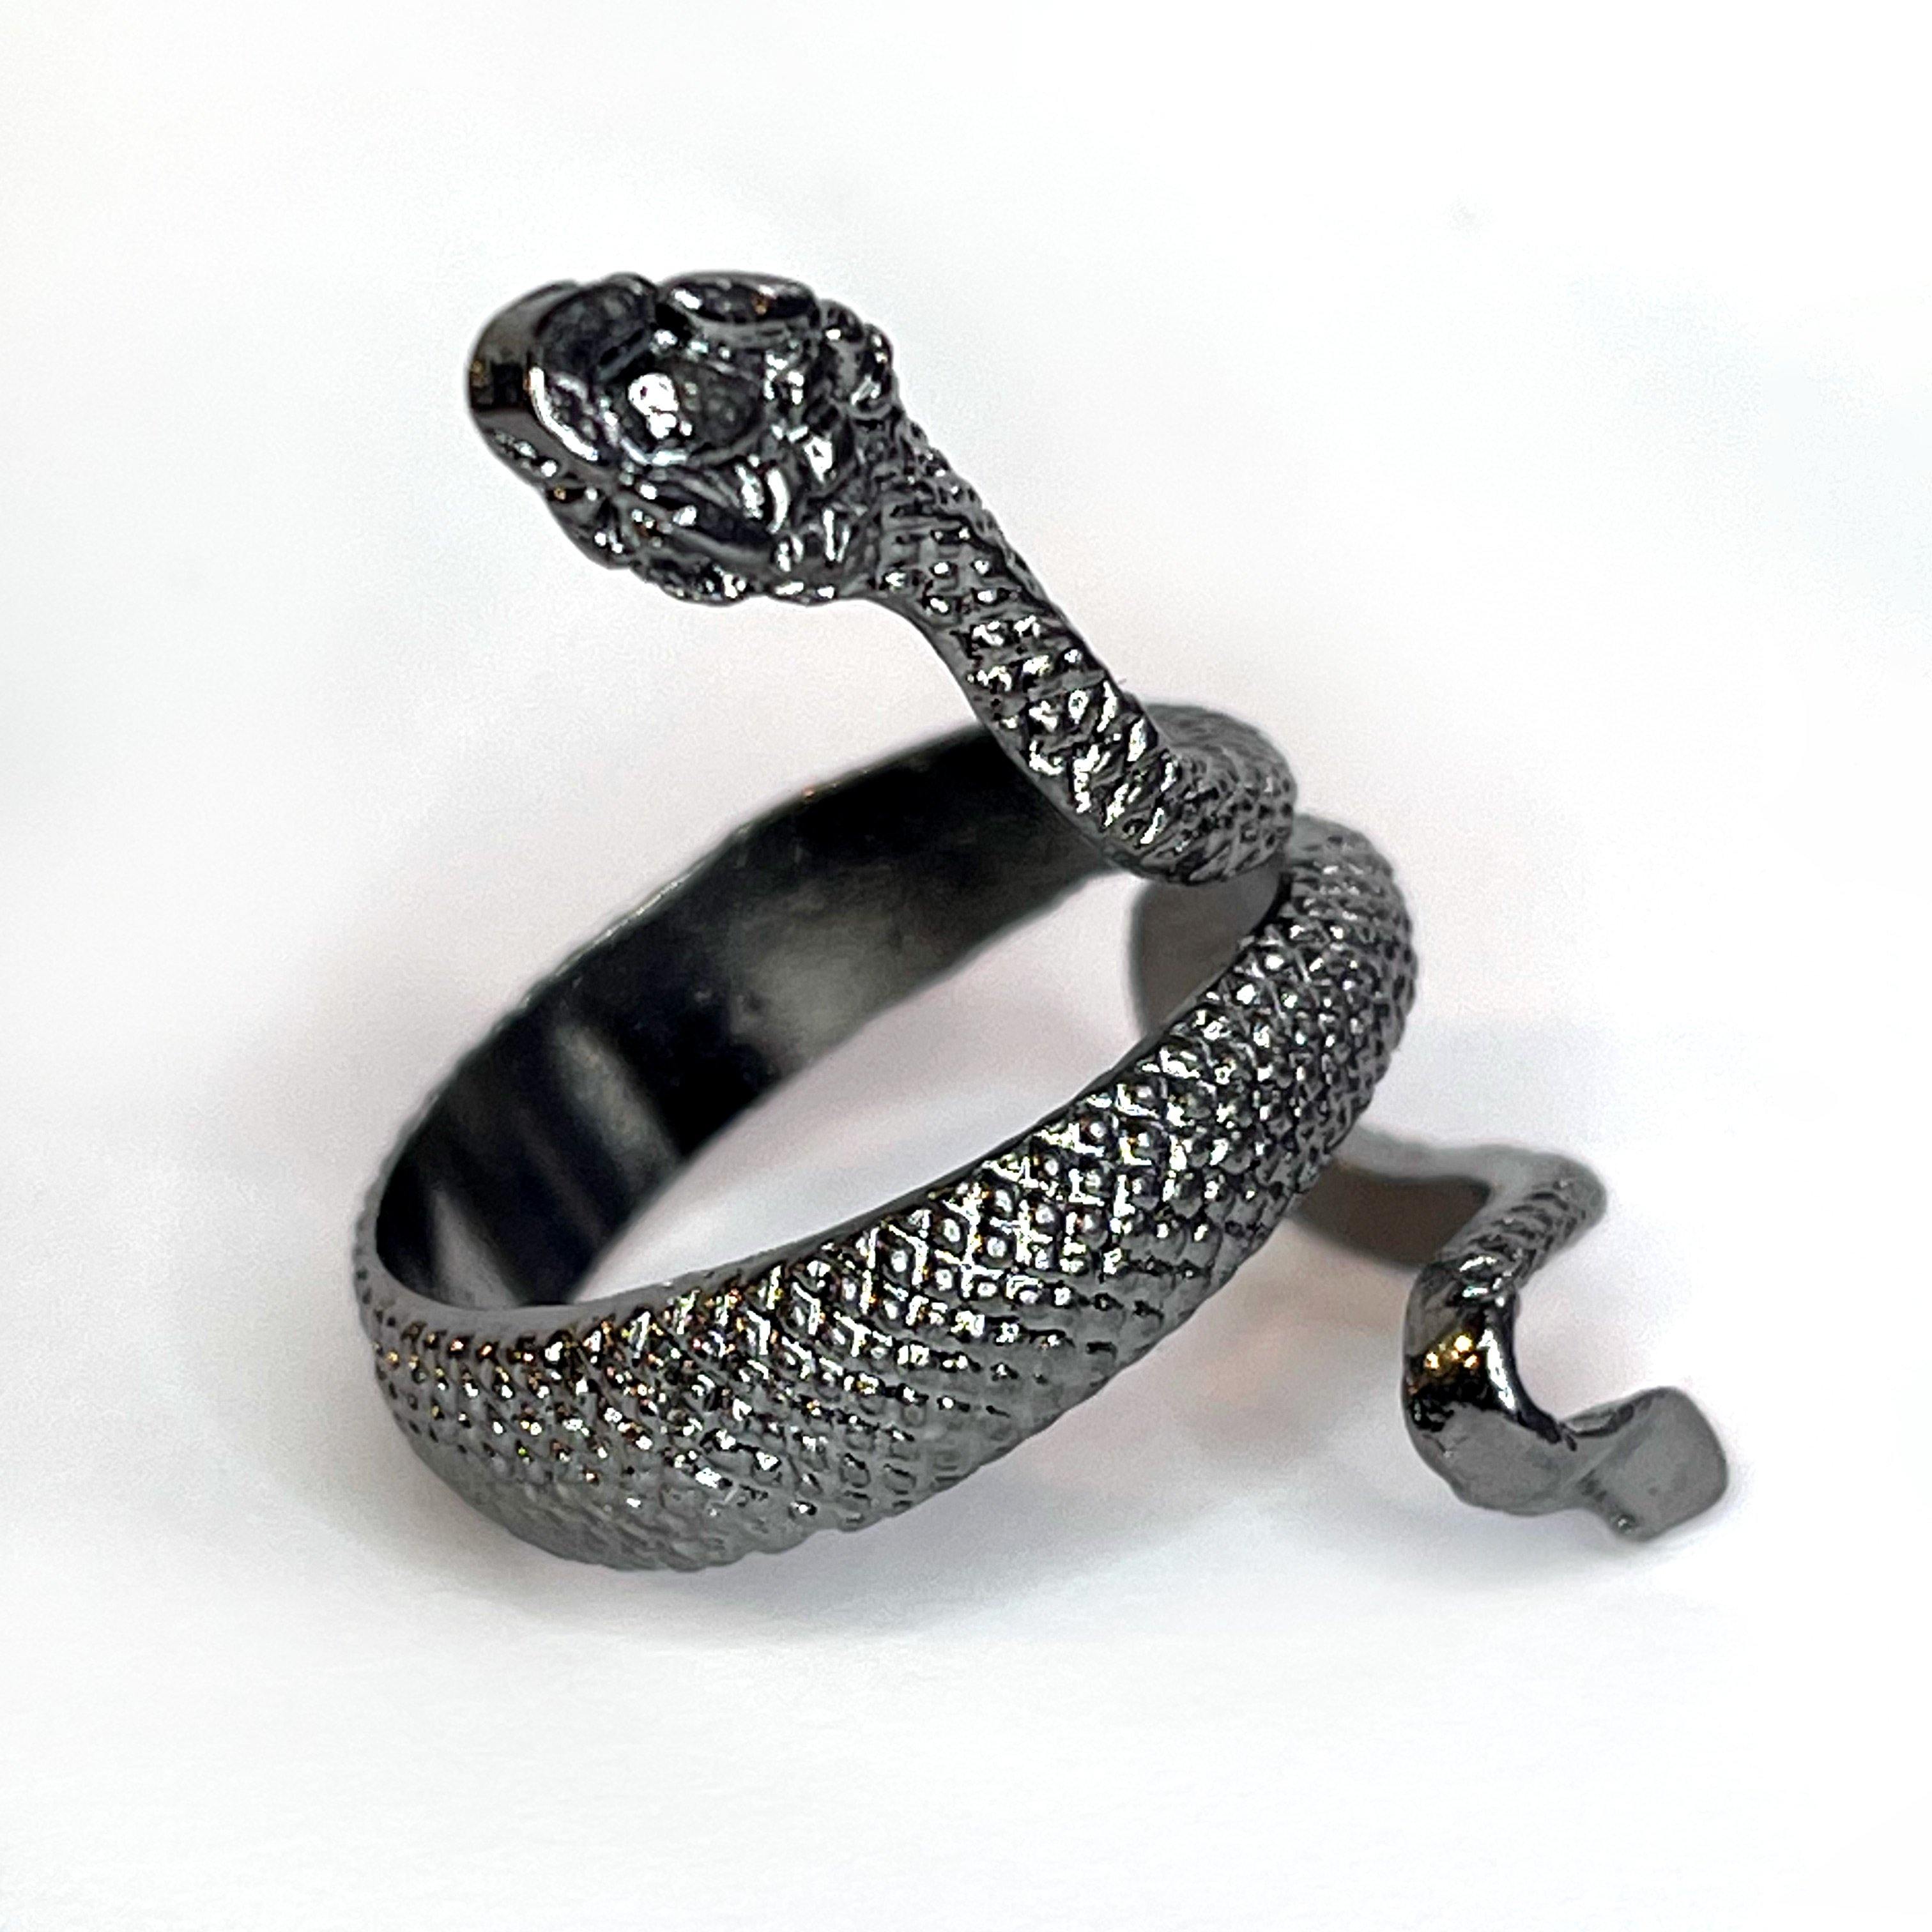 Black snake ring for men and boys pack of 1